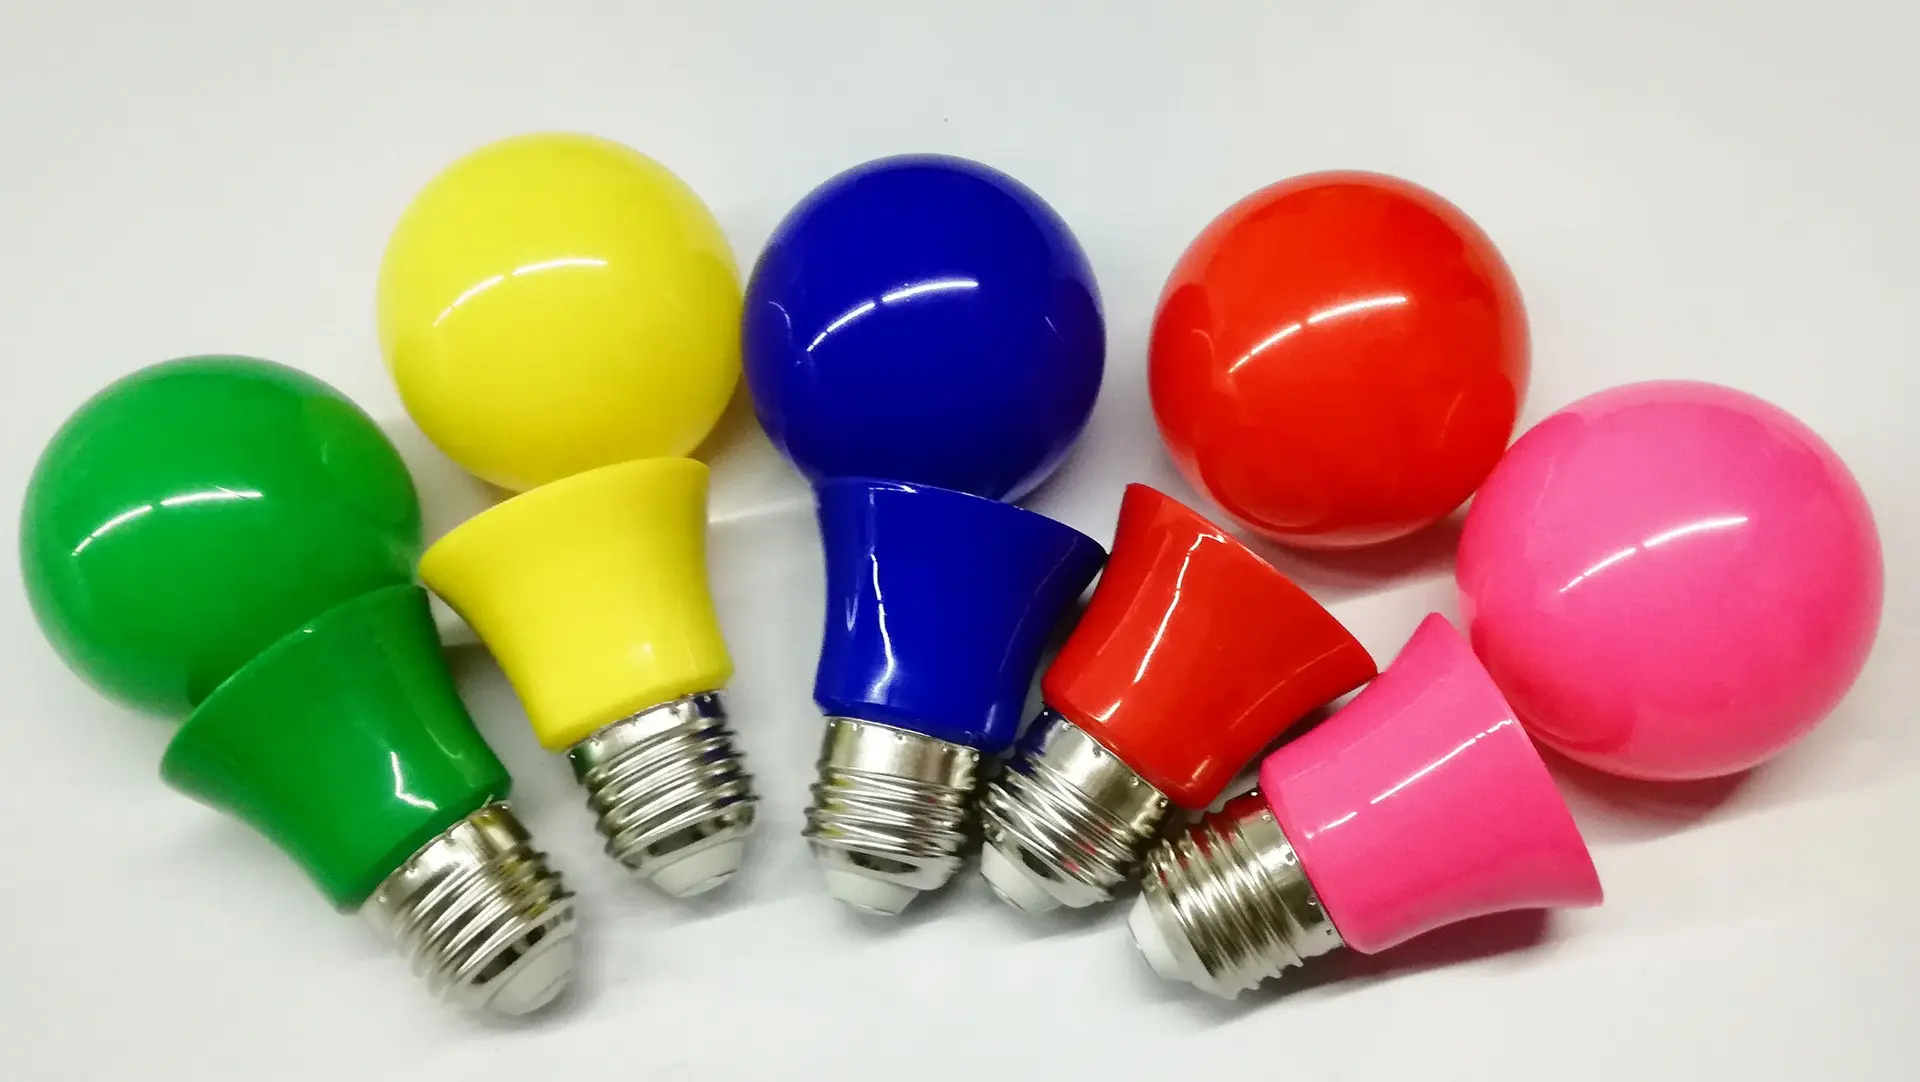 wholesale A19 A60 led bulbs multi colors Christmas energy saving light bulbs holiday light bulbs decor